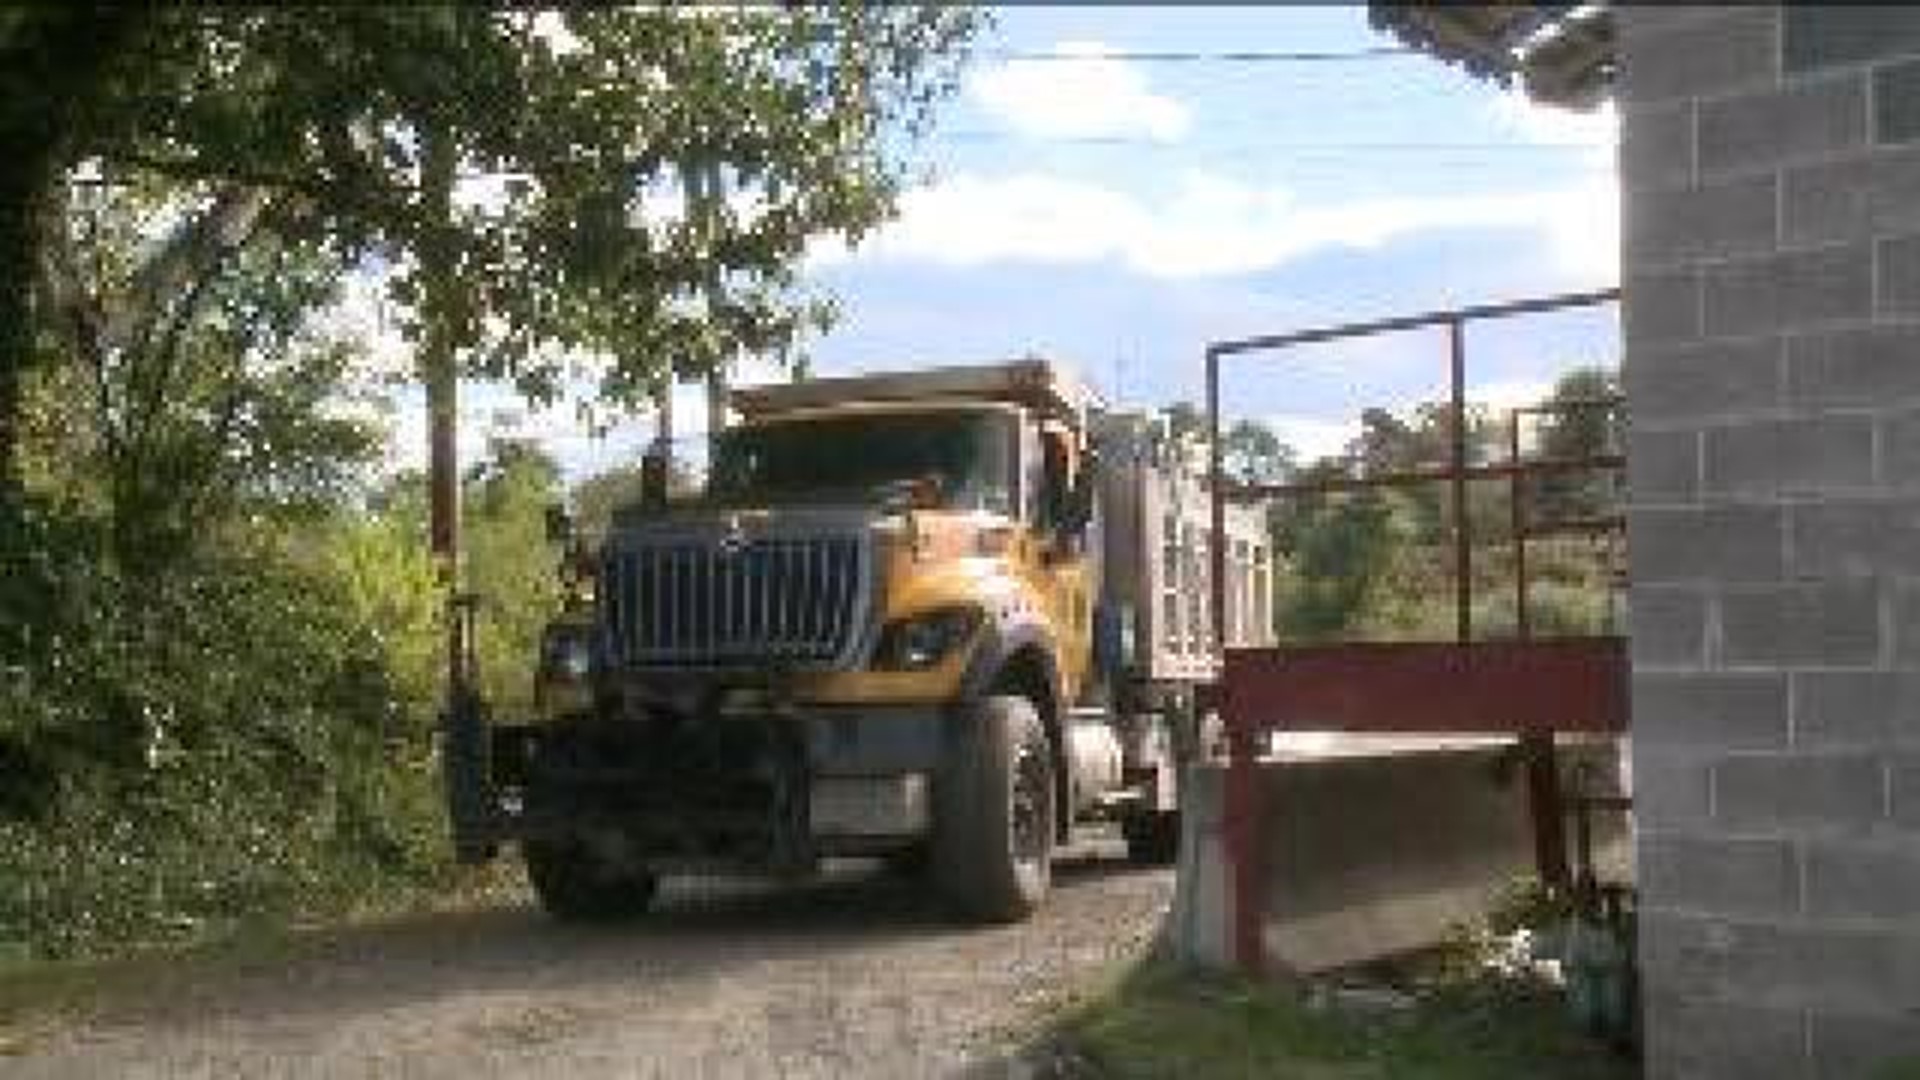 Police Found Stolen Dump Truck